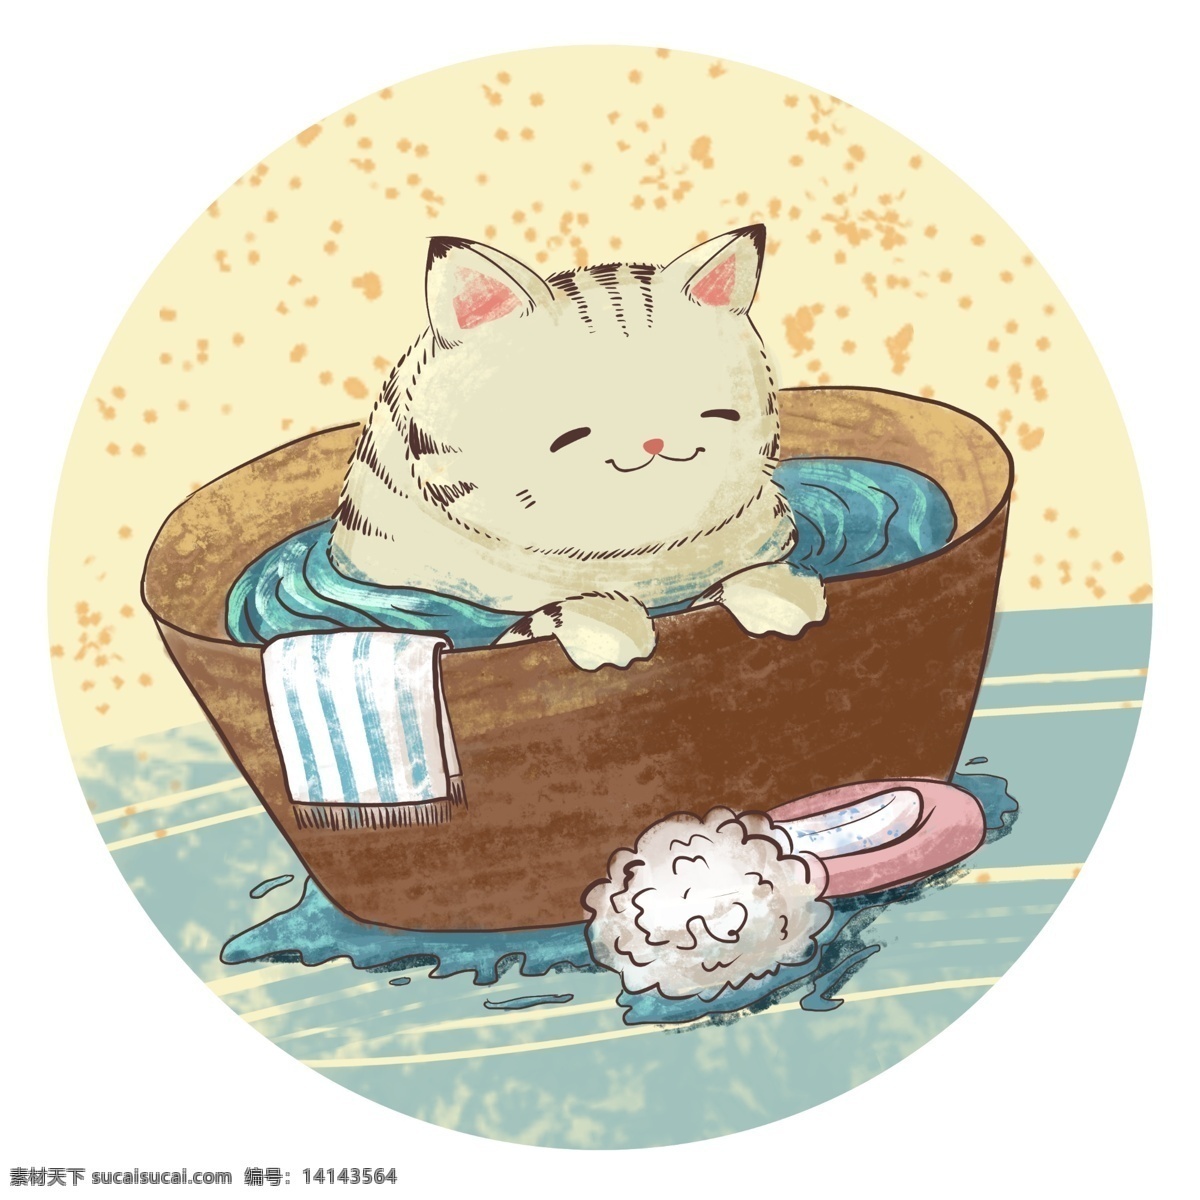 肌理 手绘 猫 冬季 泡澡 肌理手绘 水彩 温暖 暖和 洗澡 舒服 可爱 卡通 小动物 享受 q版